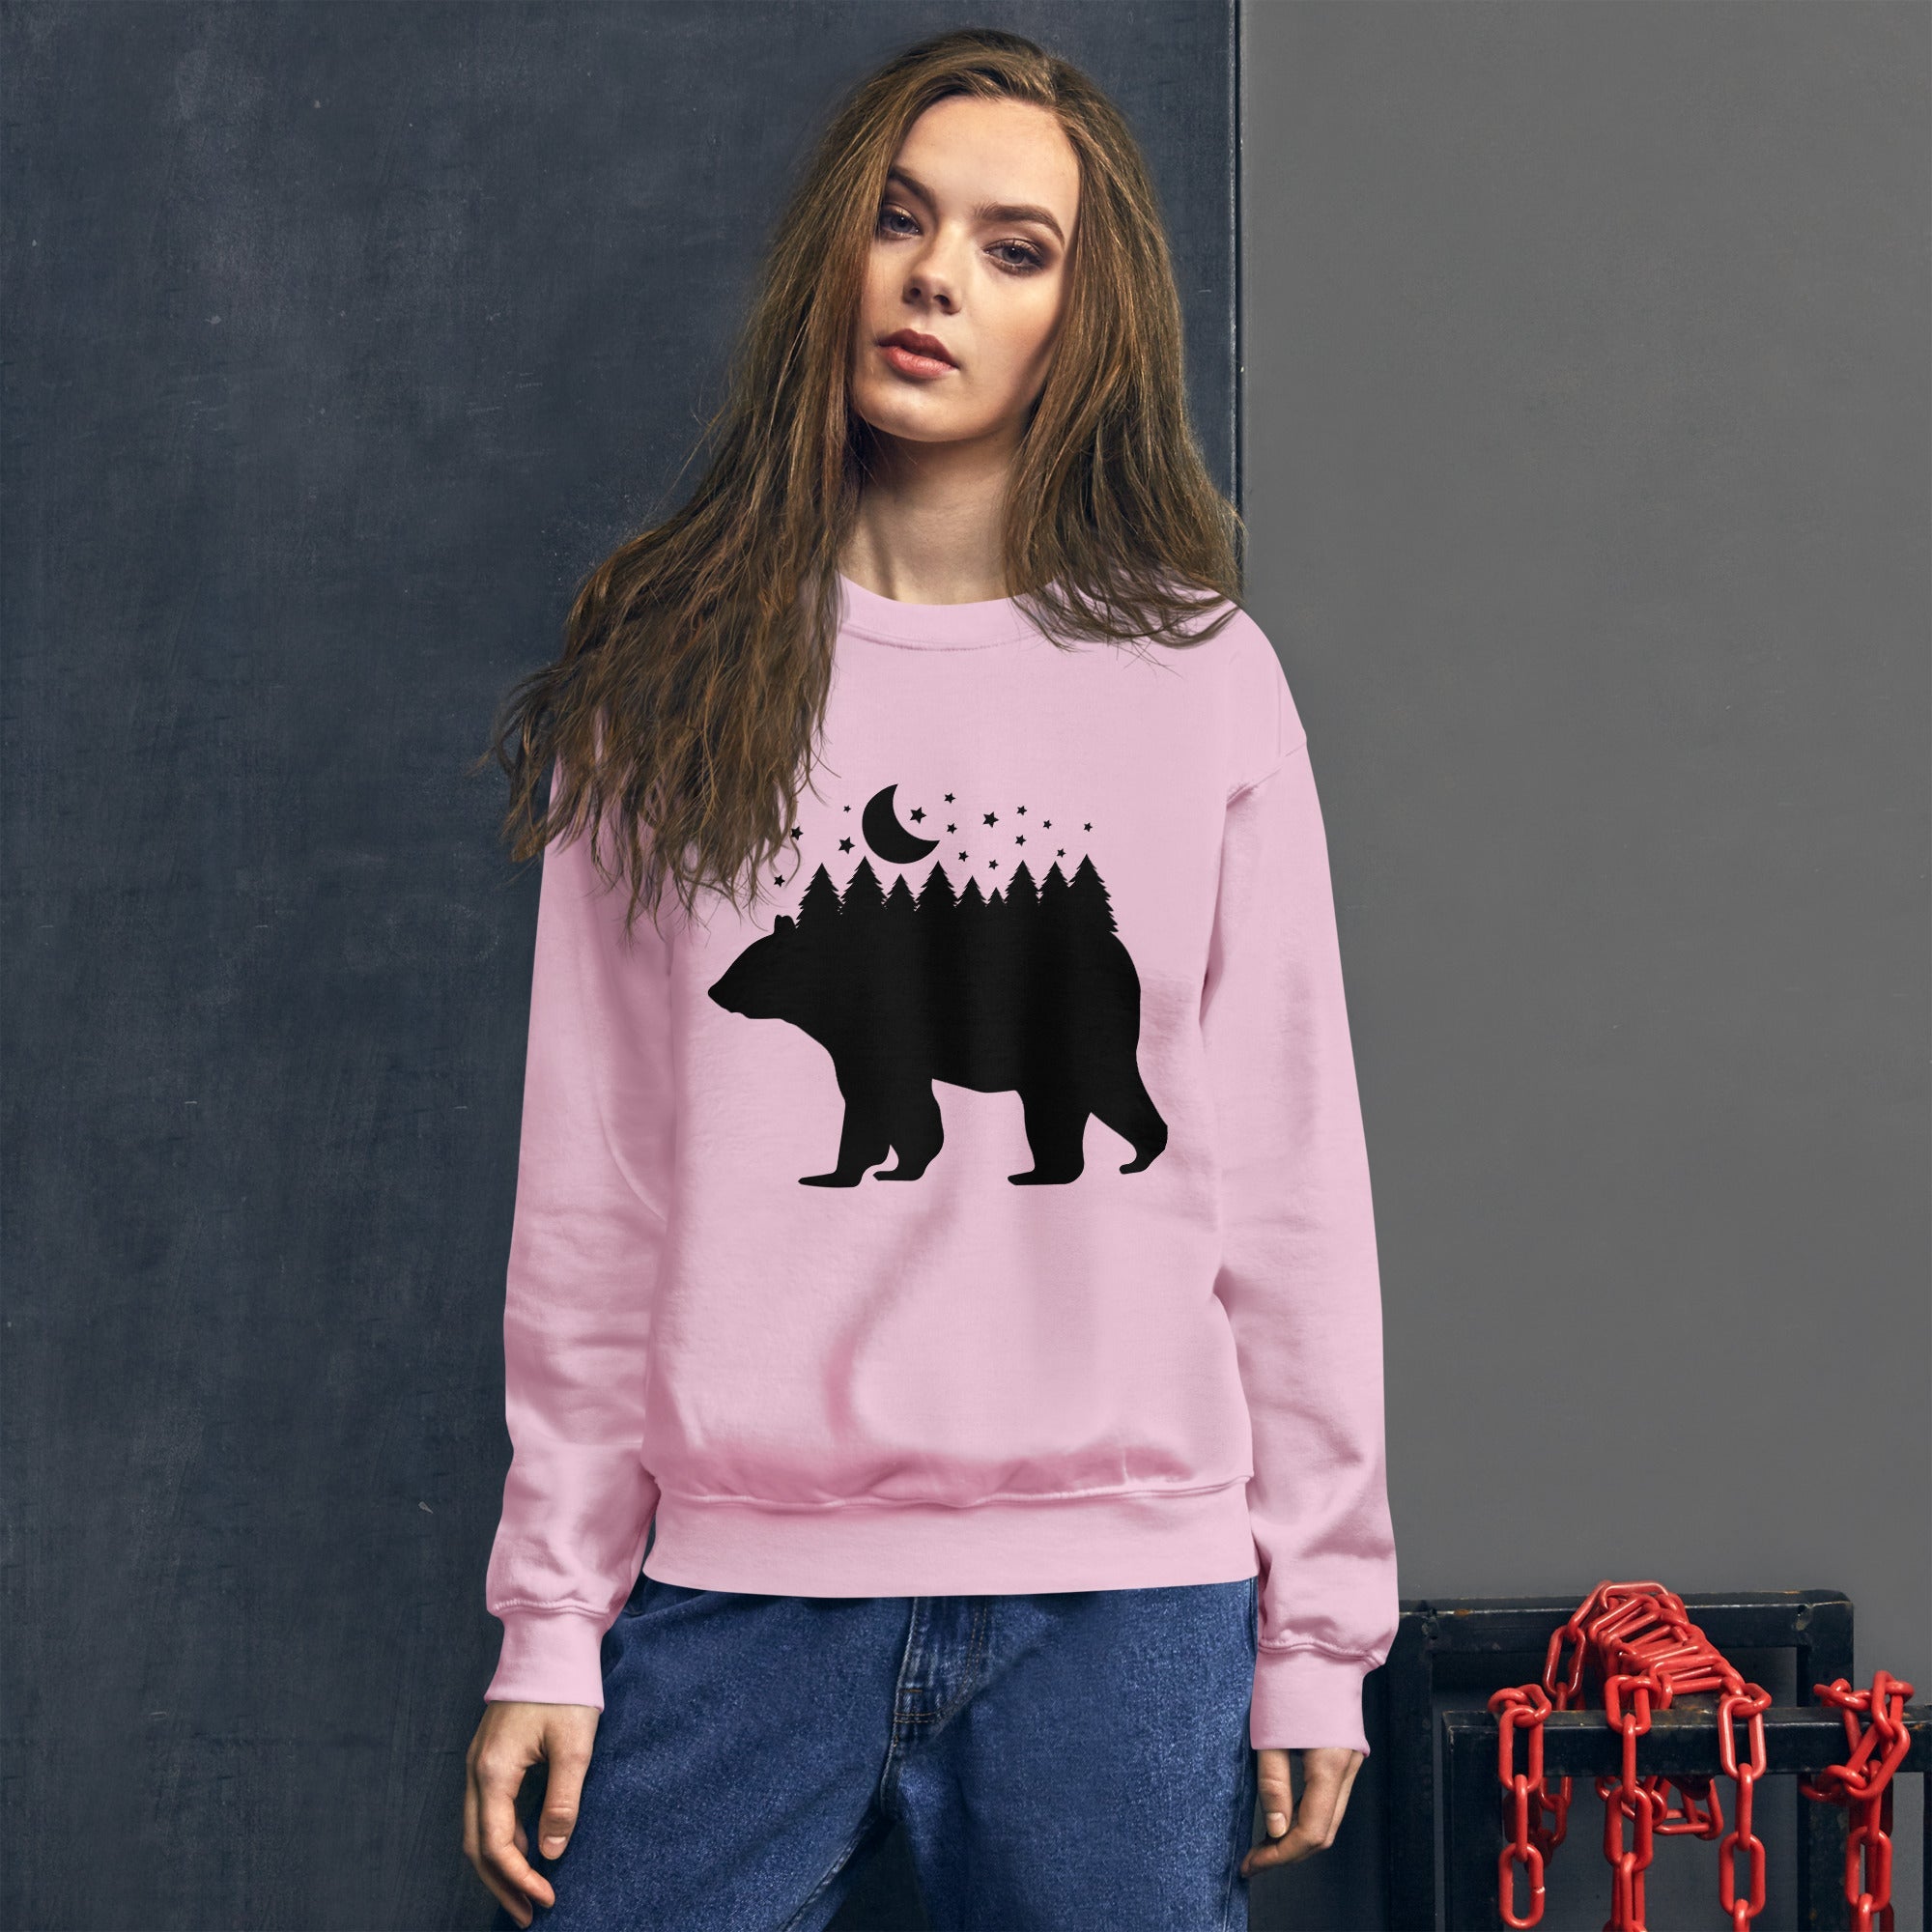 Forest Bear Women Sweatshirt